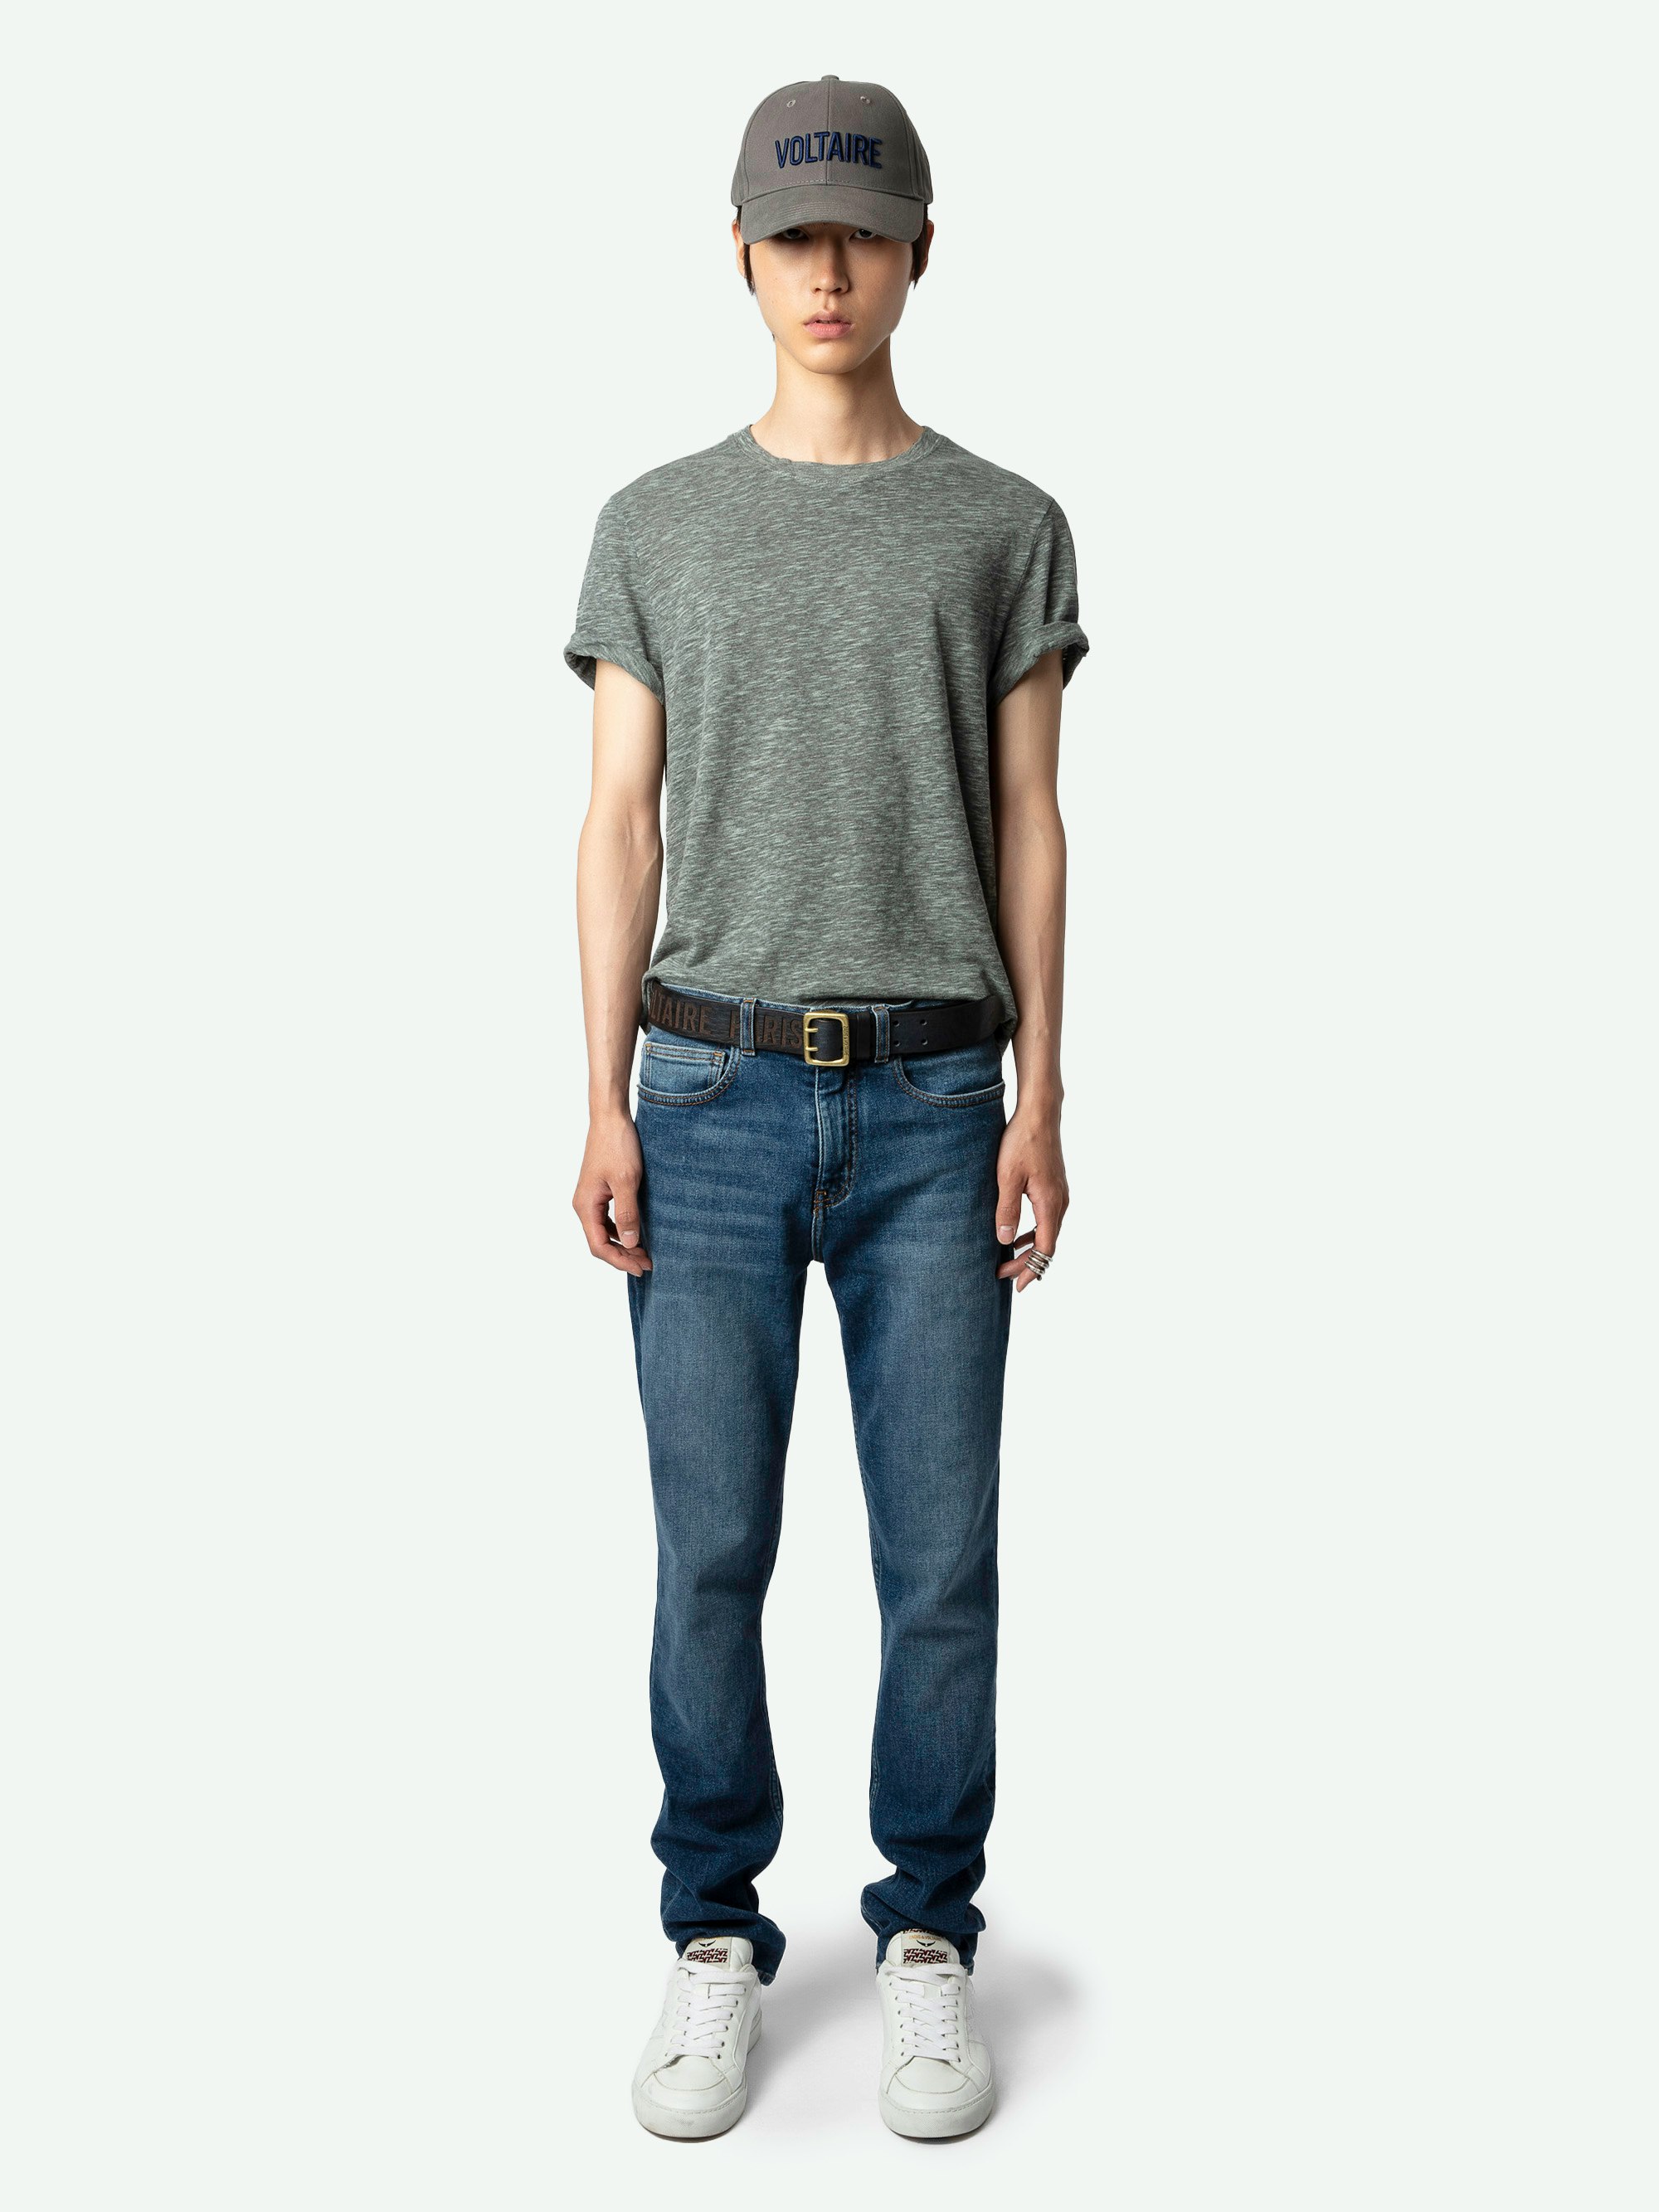 T-Shirt Tommy Arrow - T-shirt grigia fiammata con maniche corte e stampa con freccia sul retro.